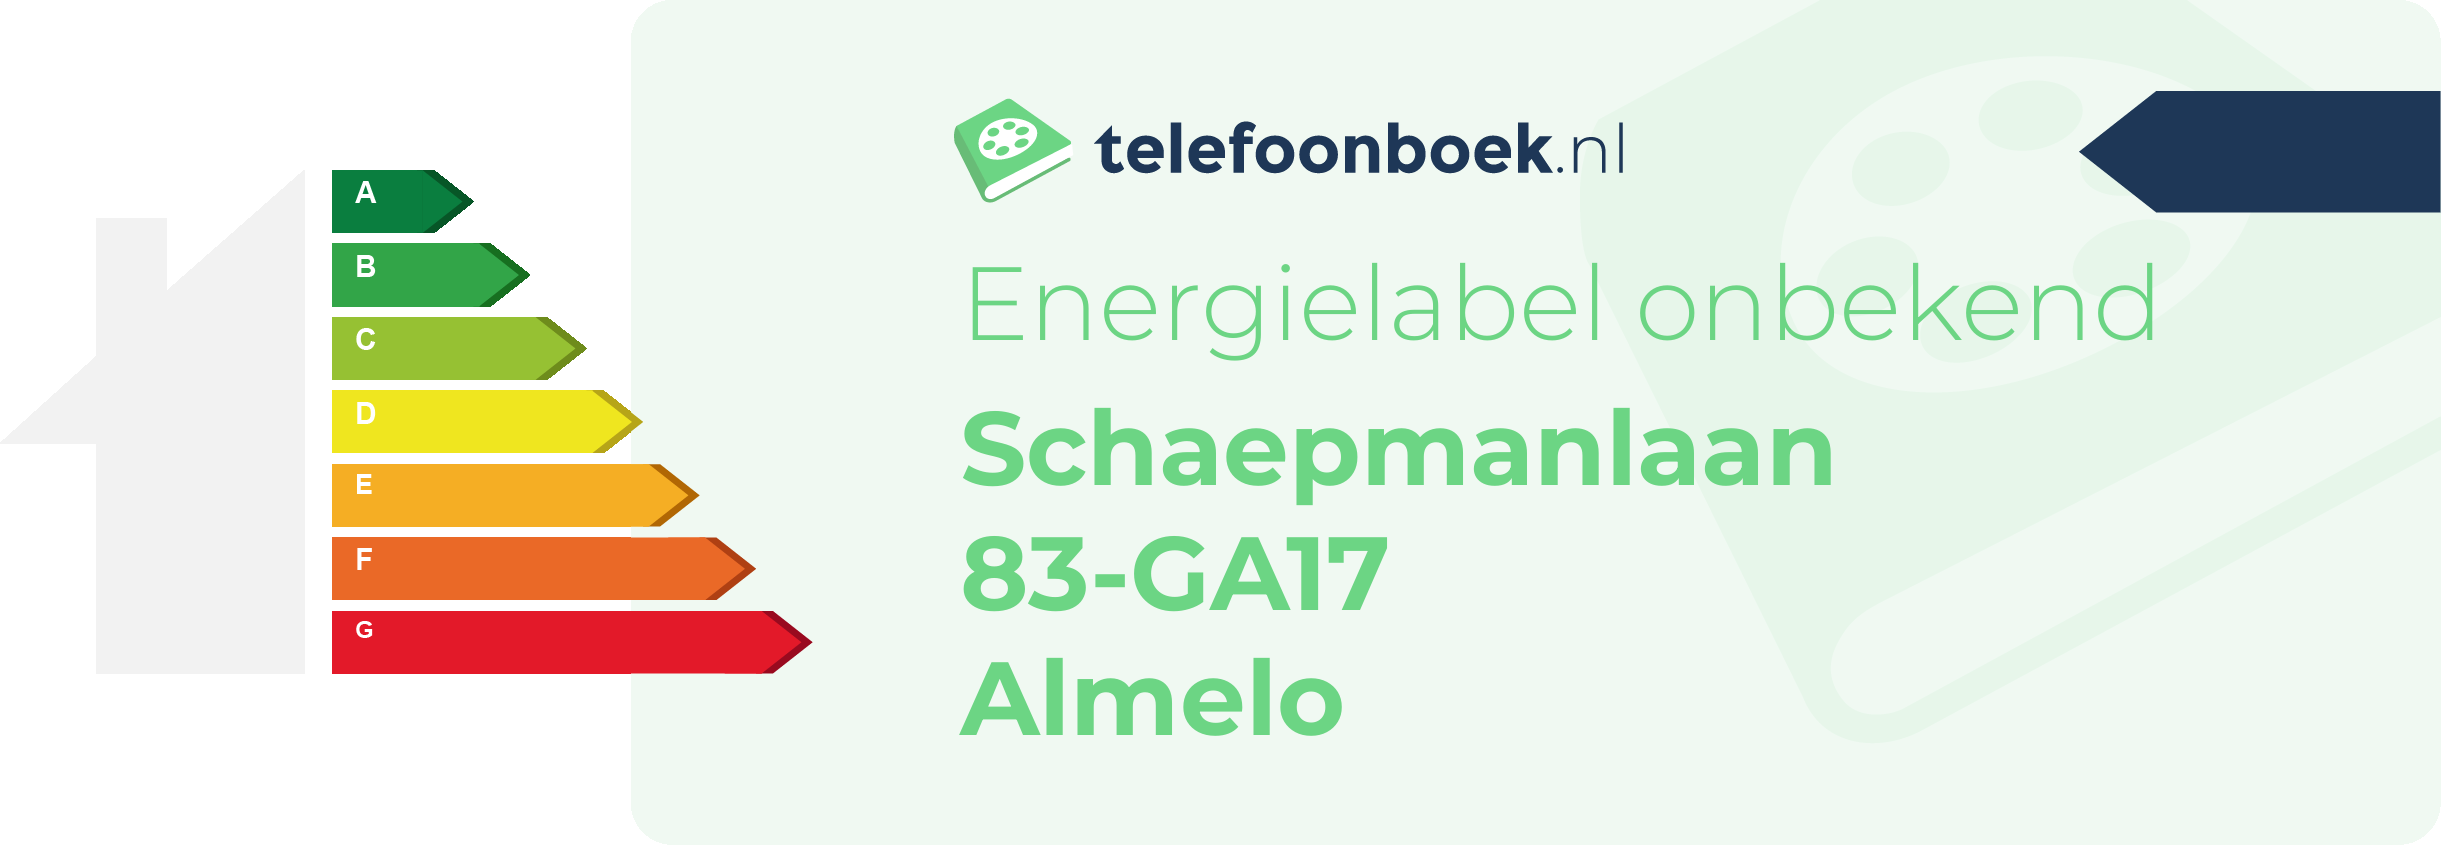 Energielabel Schaepmanlaan 83-GA17 Almelo